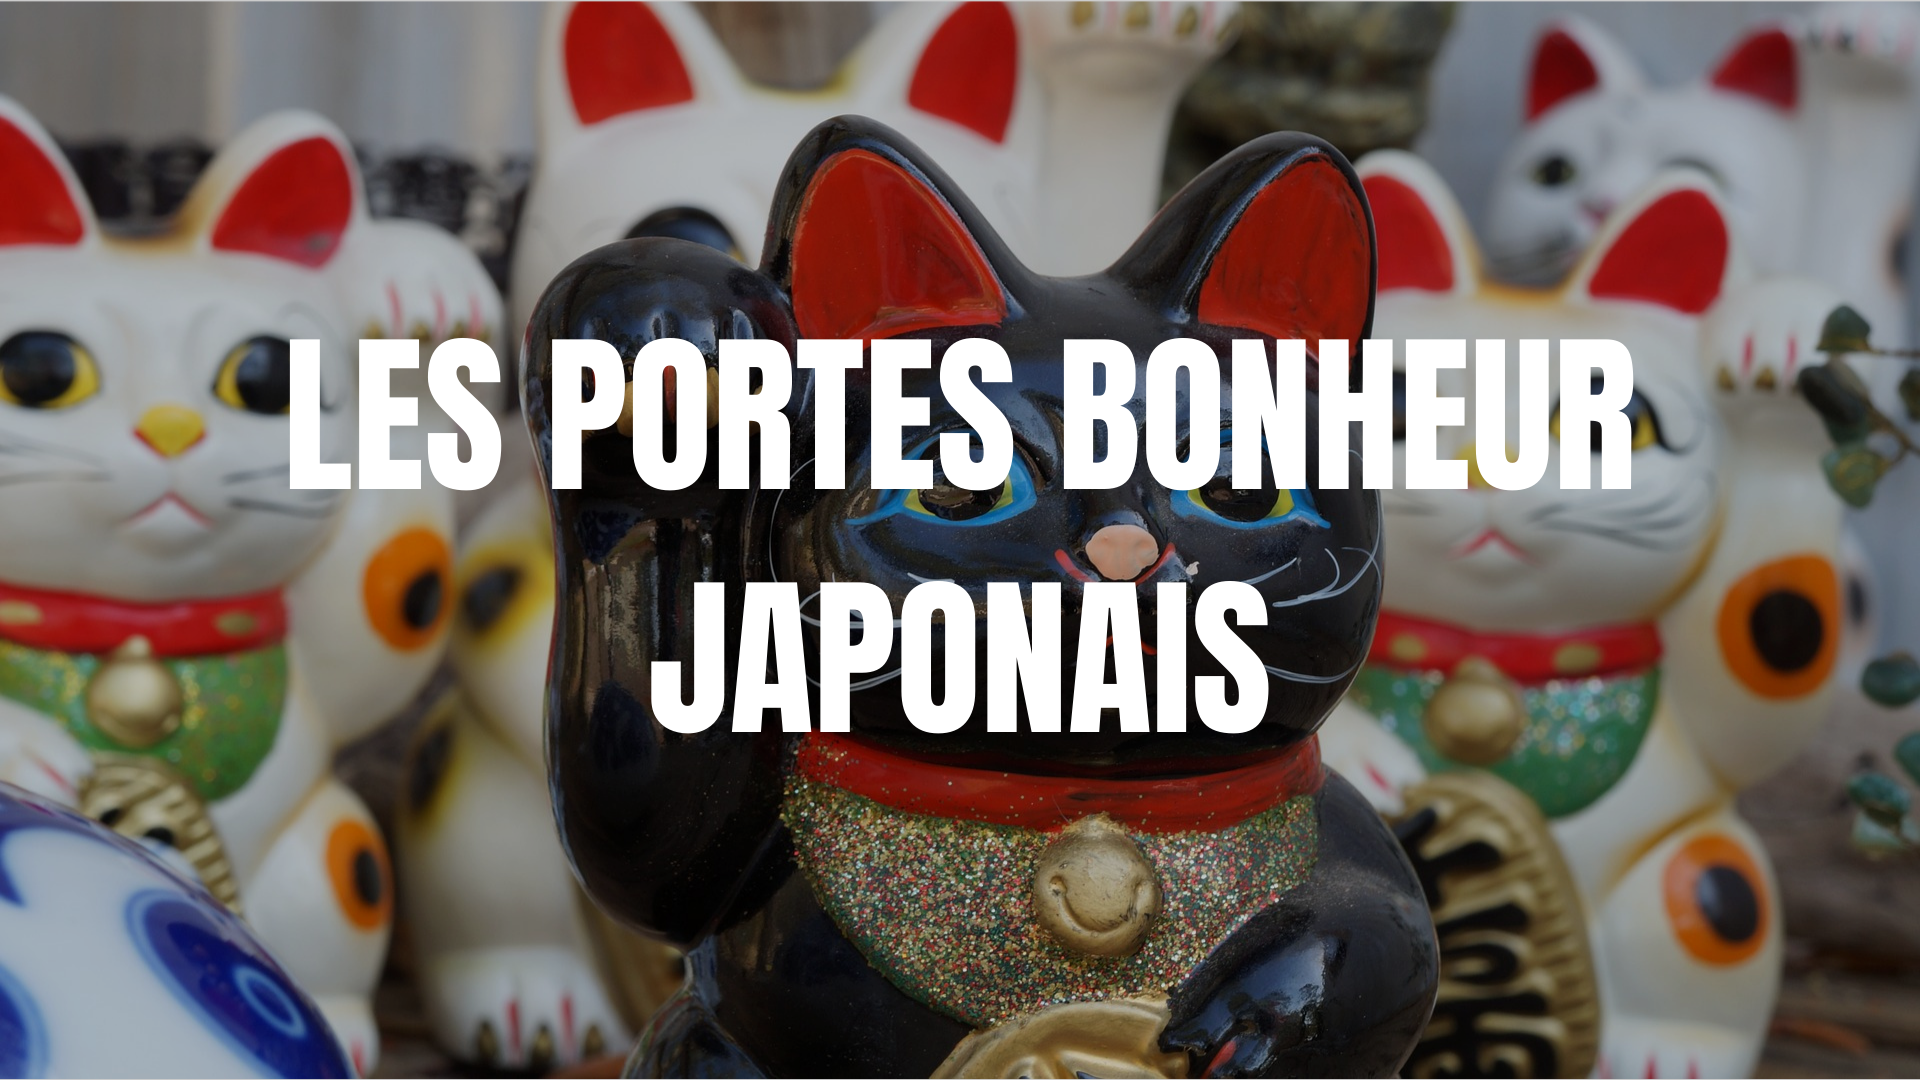 Le Manekineko : l'histoire complète du chat porte-bonheur japonais